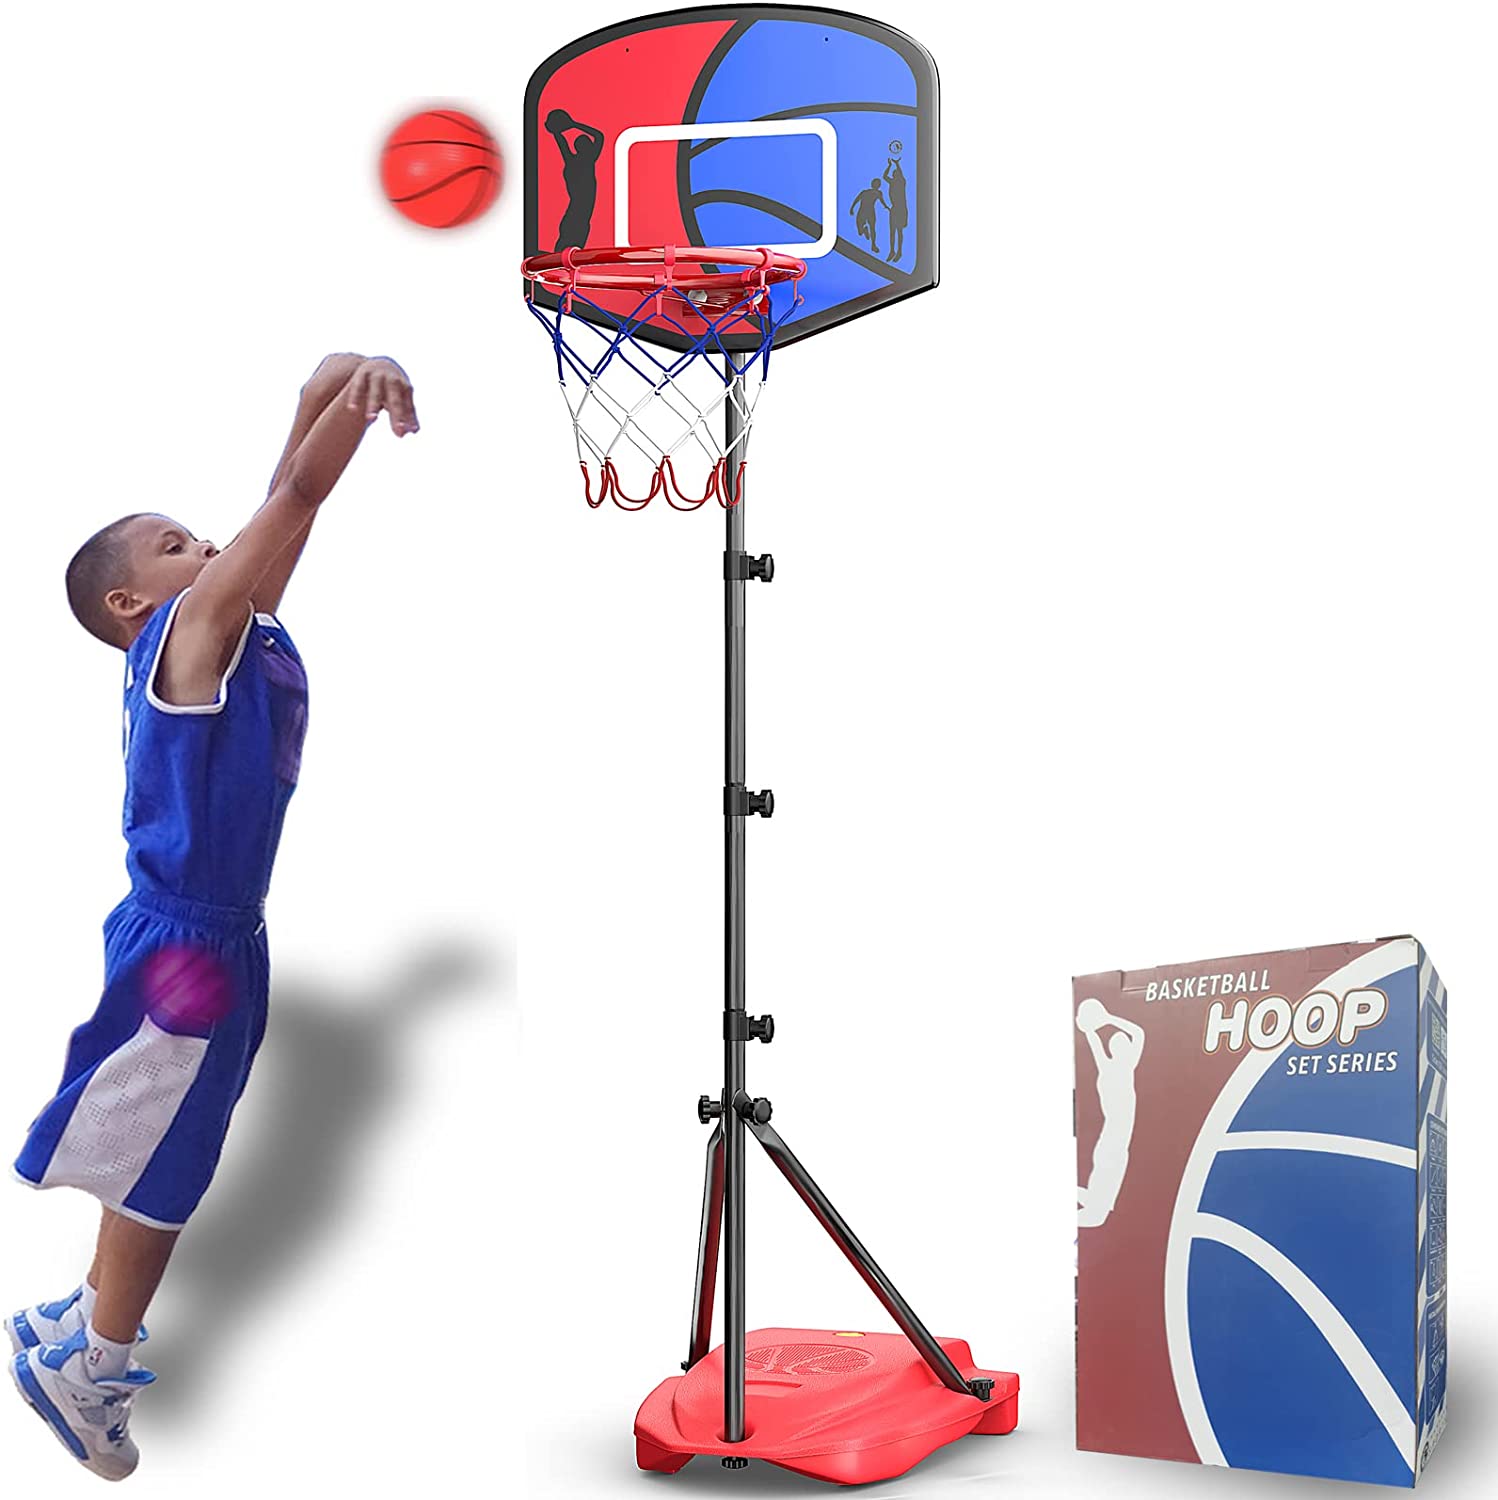 Macium 109-141cm Kids Adjustable Basketball Hoop and Stand Portable Basketball Stand Outdoor Indoor Sport Game Play Set